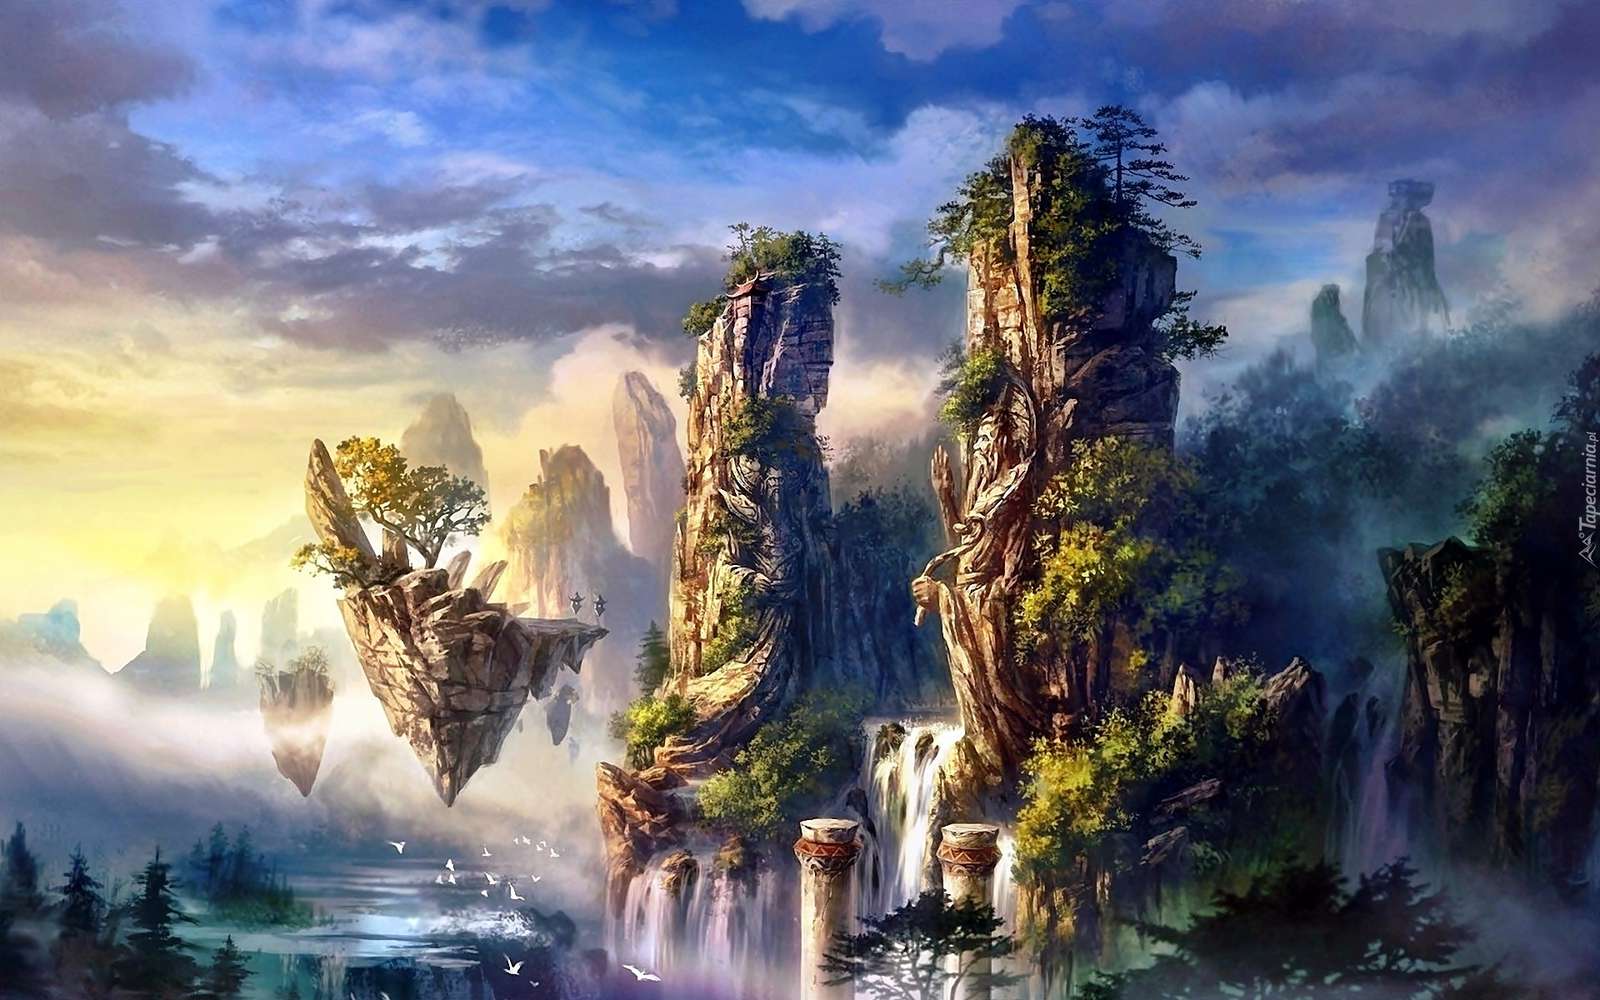 Fairy land van mist legpuzzel online